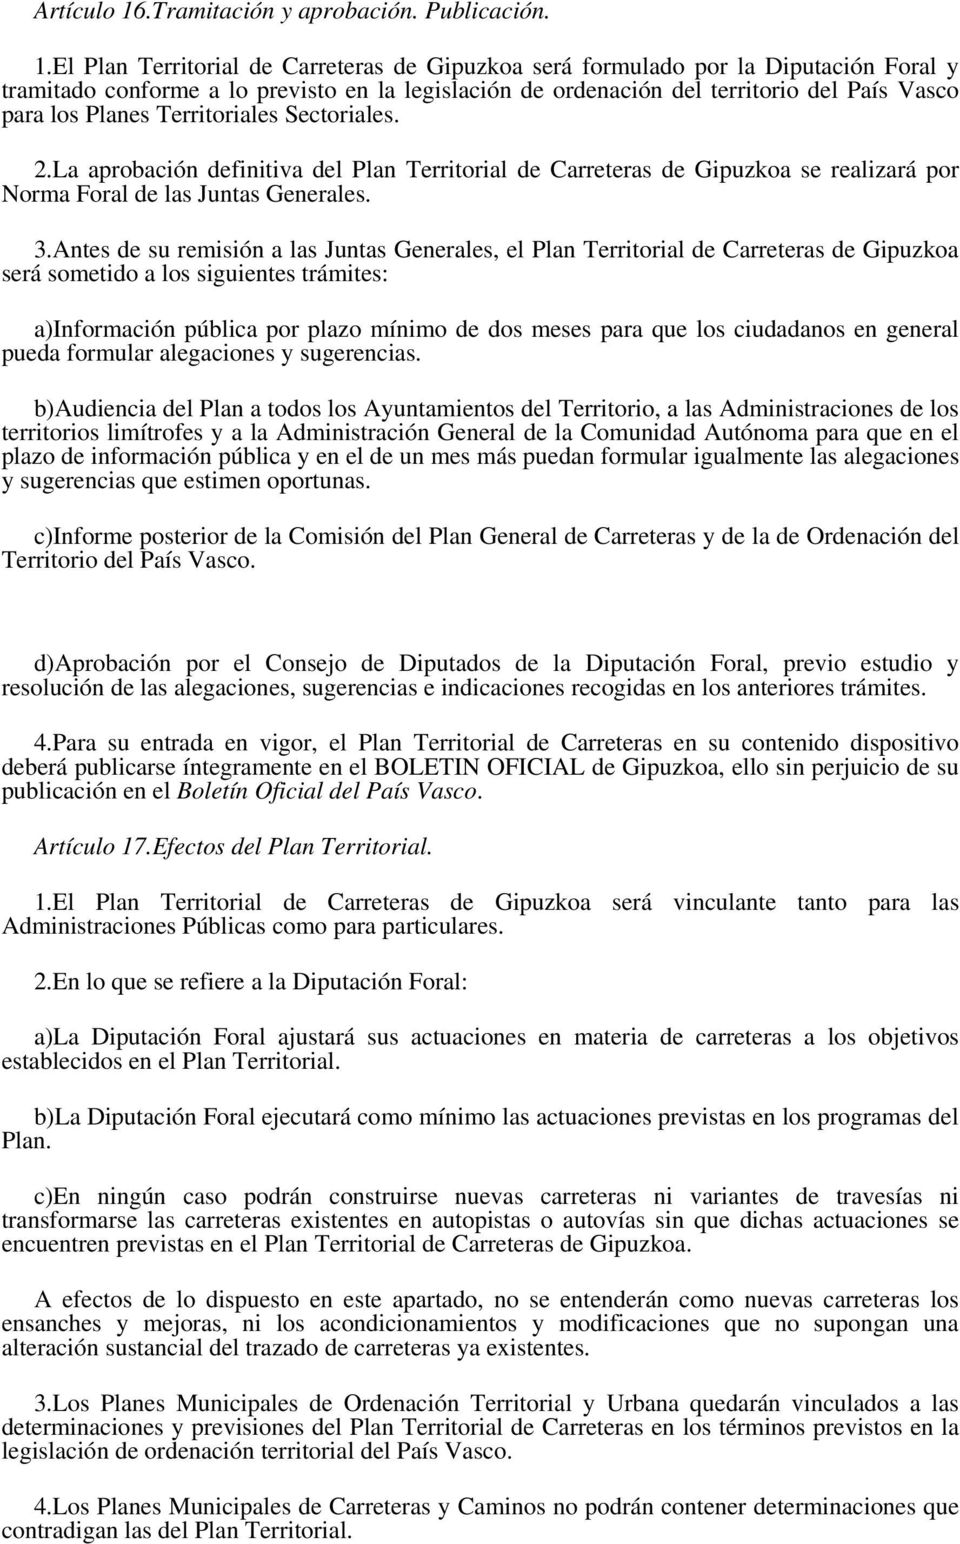 El Plan Territorial de Carreteras de Gipuzkoa será formulado por la Diputación Foral y tramitado conforme a lo previsto en la legislación de ordenación del territorio del País Vasco para los Planes